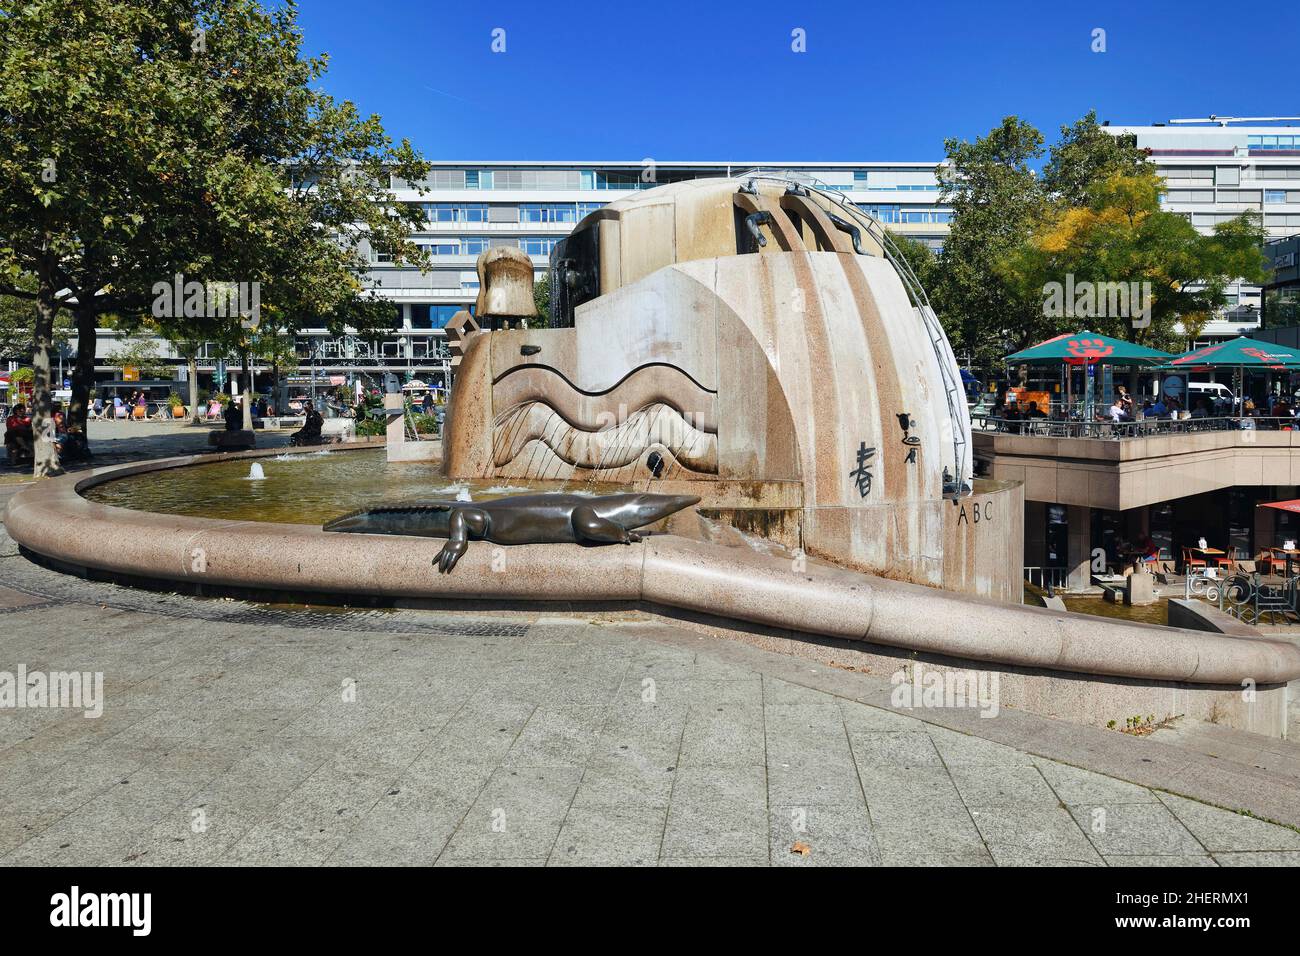 World Globe Fountain, Fontaine représentant la Terre, Breitscheidplatz, Charlottenburg, Berlin, Allemagne Banque D'Images